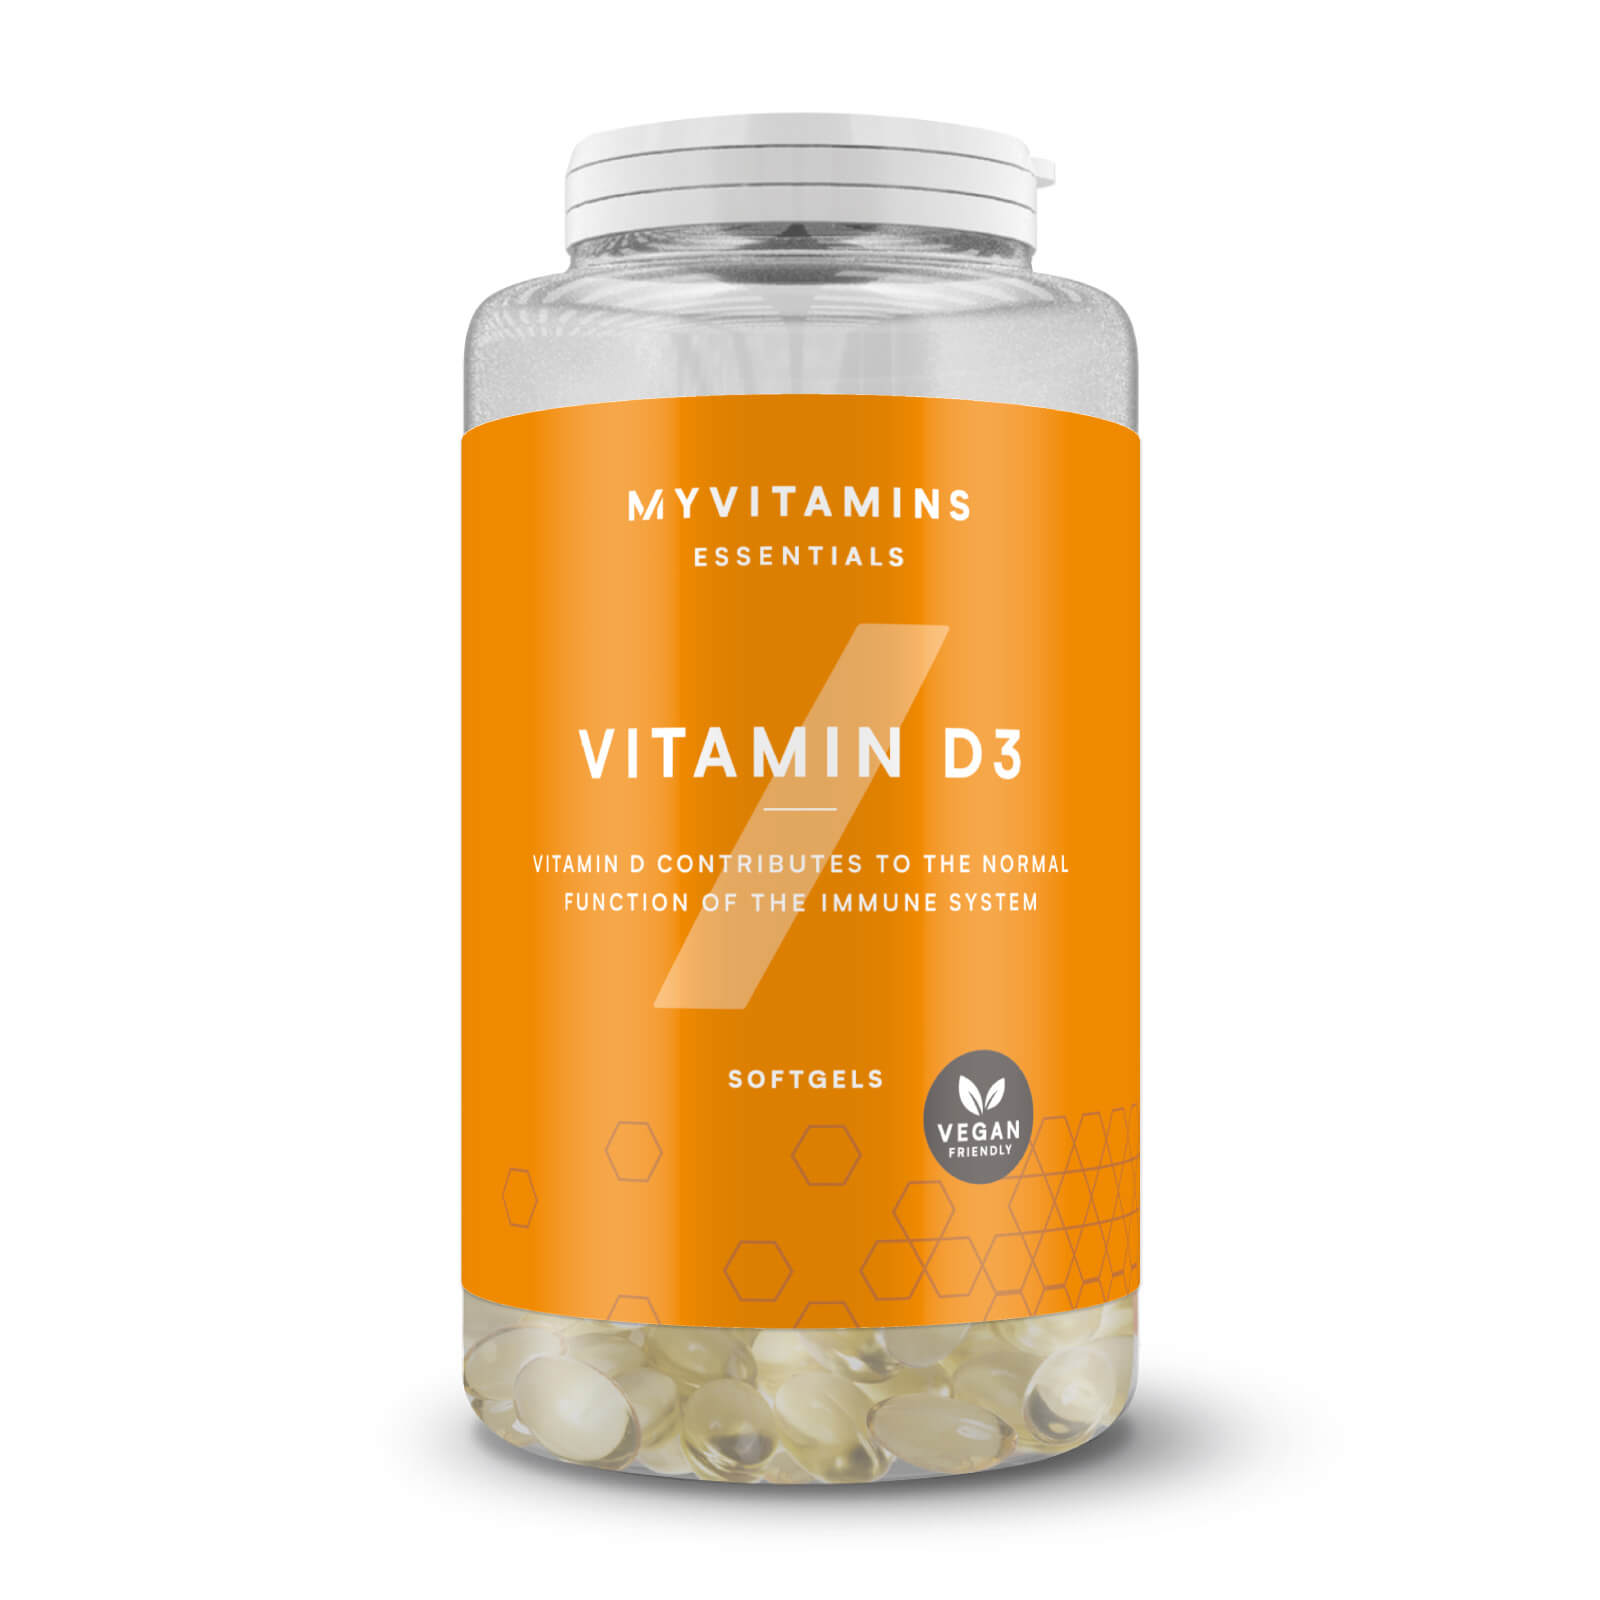 myvitamins UK Myvitamins Vitamin D3 Softgels - 30Softgels - Vegan